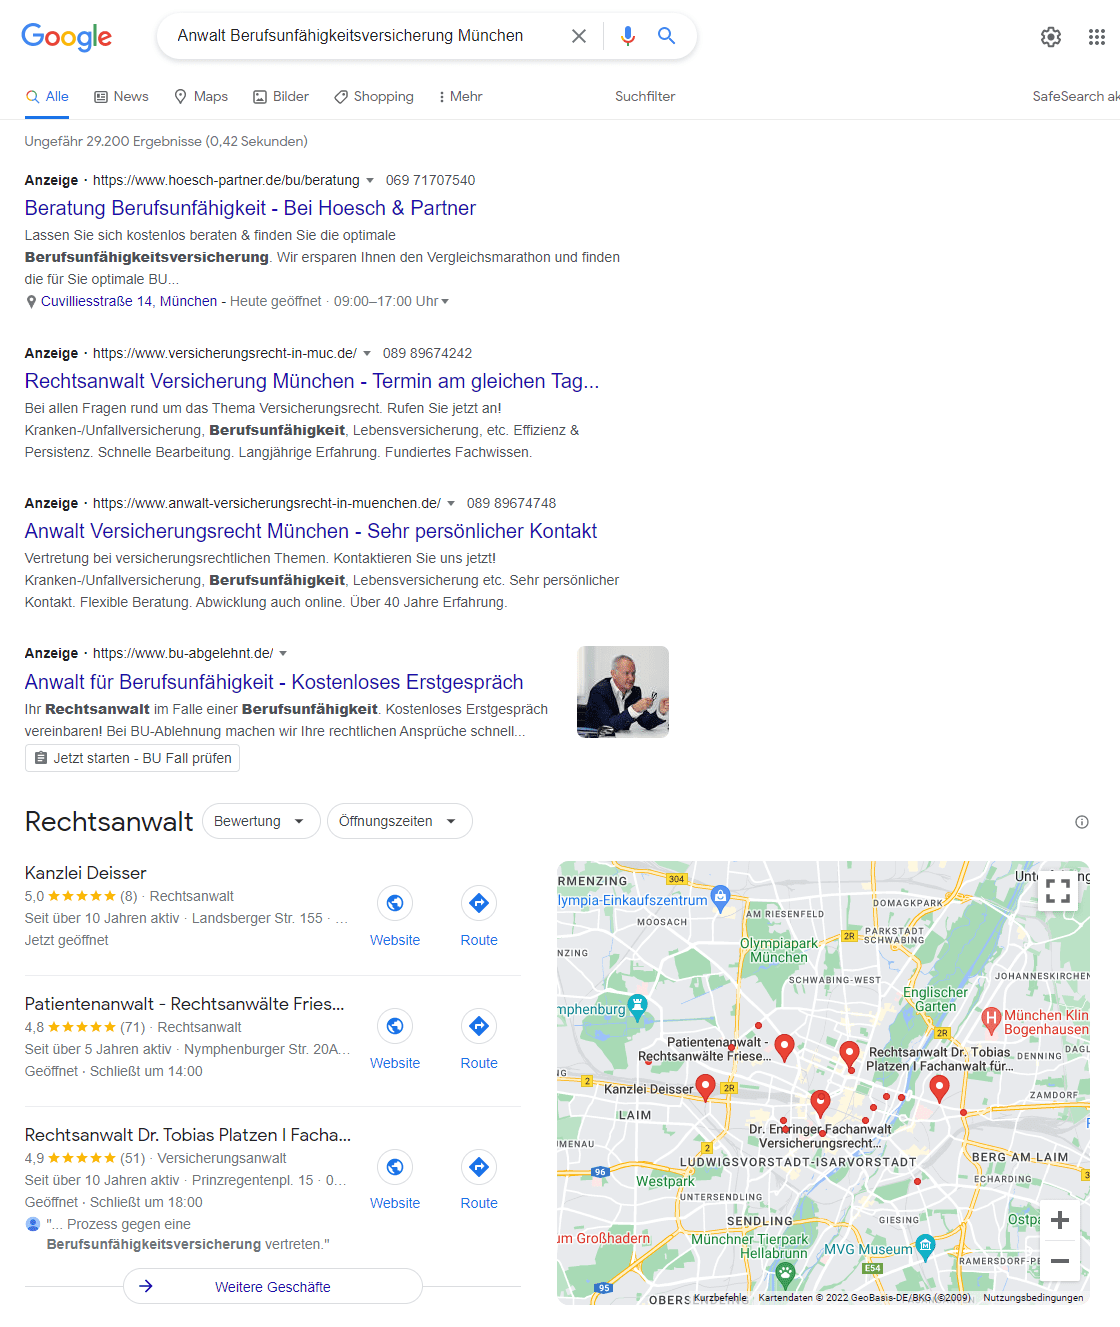 Nutzen Sie lieber unsere fundierte Empfehlung eines Fachanwalts, als wahllos und ohne Referenzen in Google nach einem Rechtsanwalt zum Thema Berufsunfähigkeit in München zu suchen... (Screenshot einer Suche nach "Anwalt Berufsunfähigkeitsversicherung München" am 10.06.2022 in Google)